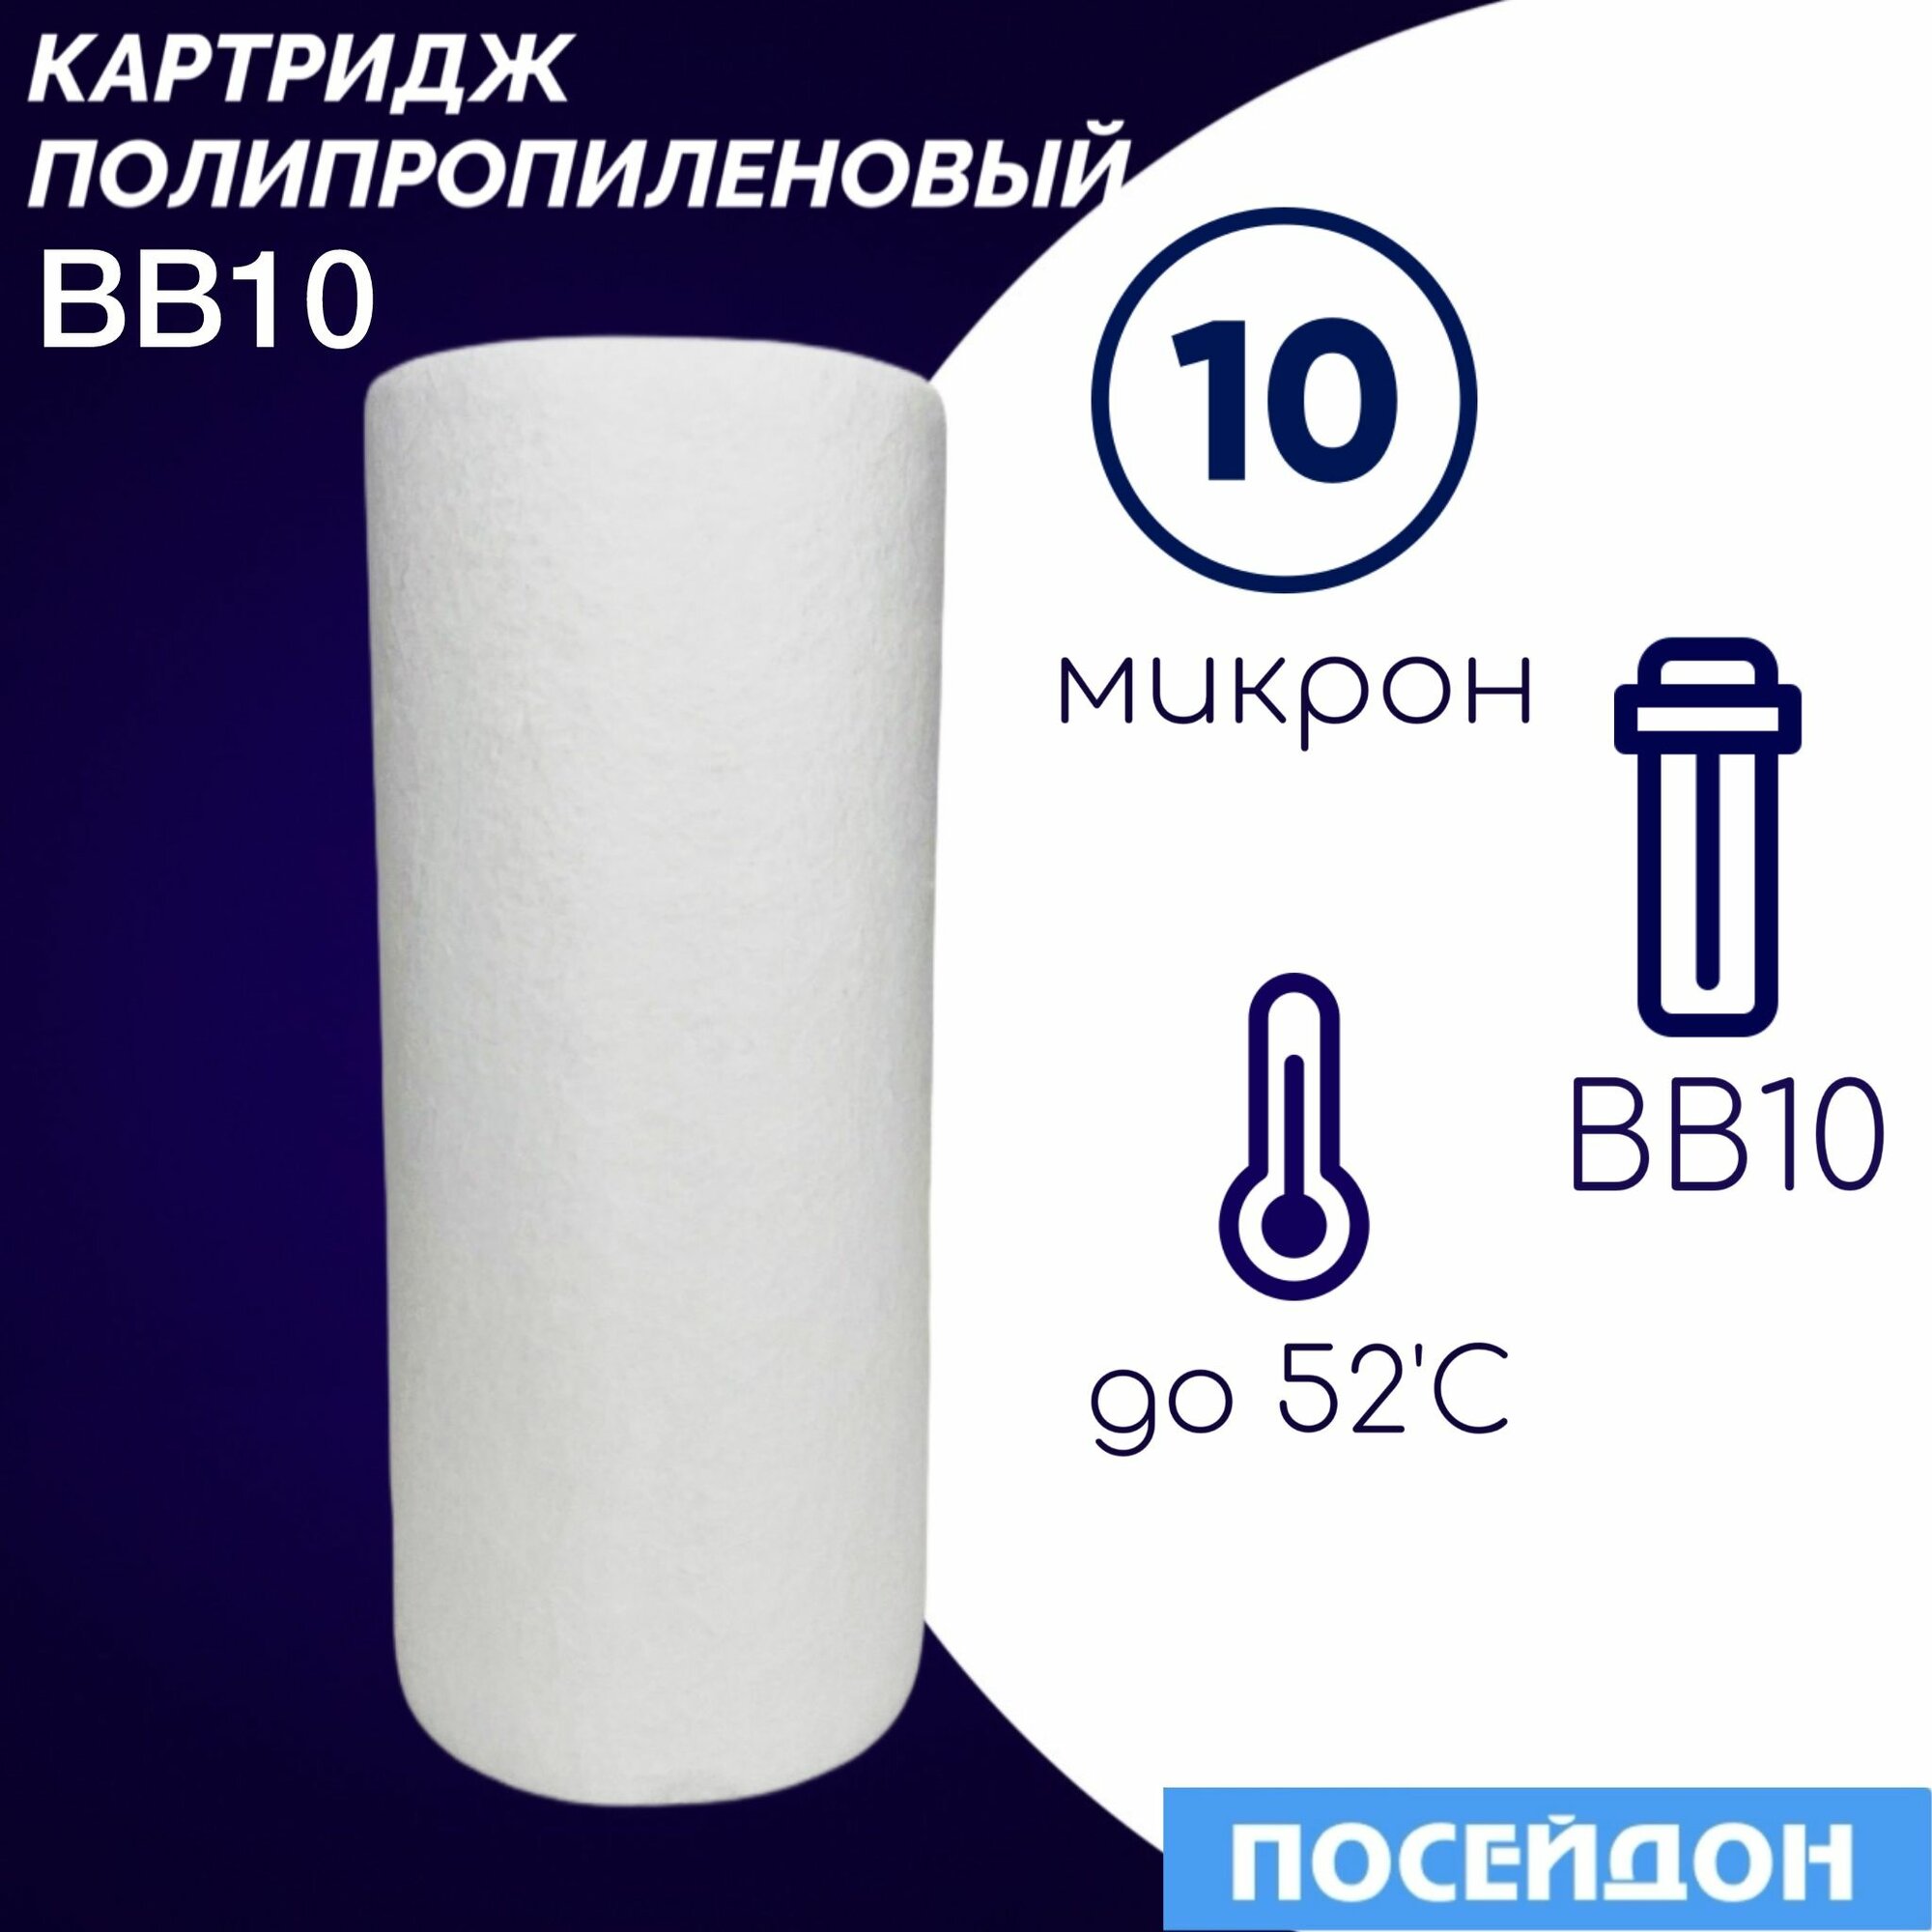 Картридж полипропиленовый ЭФГ 112/250(1шт) 10 Г элемент фильтрующий BigBlue10. Колба BB10 размер частиц фильтра 10 микрон